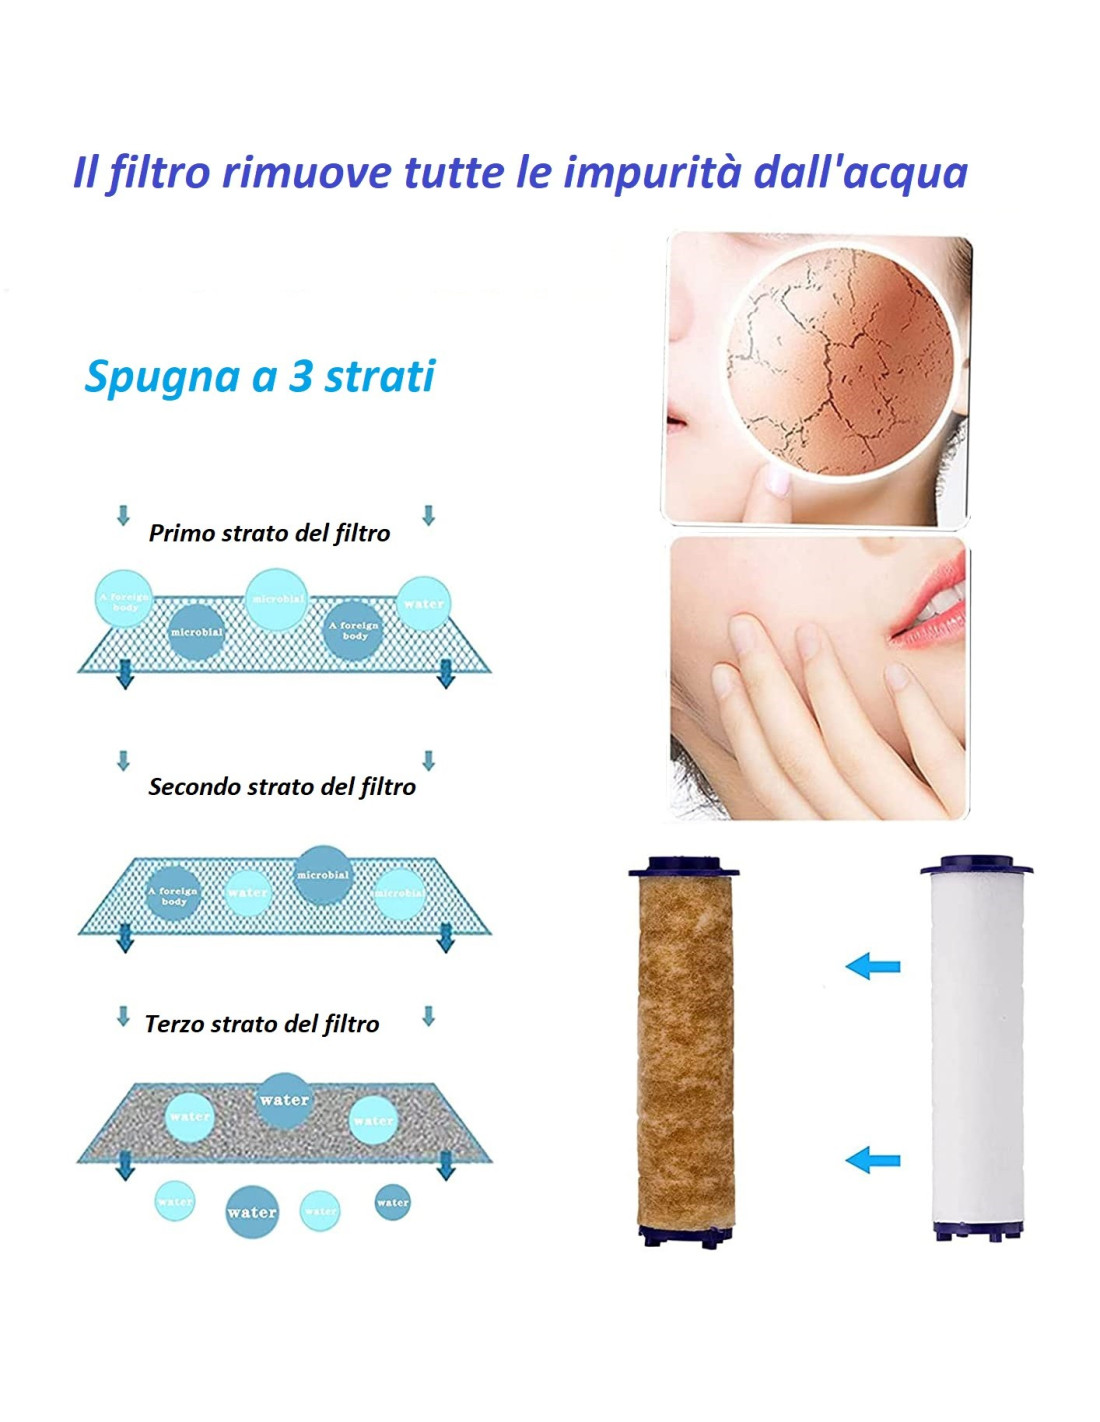 FASDUNT Soffione Doccia con Tubo 2m, Soffione Doccia Anticalcare